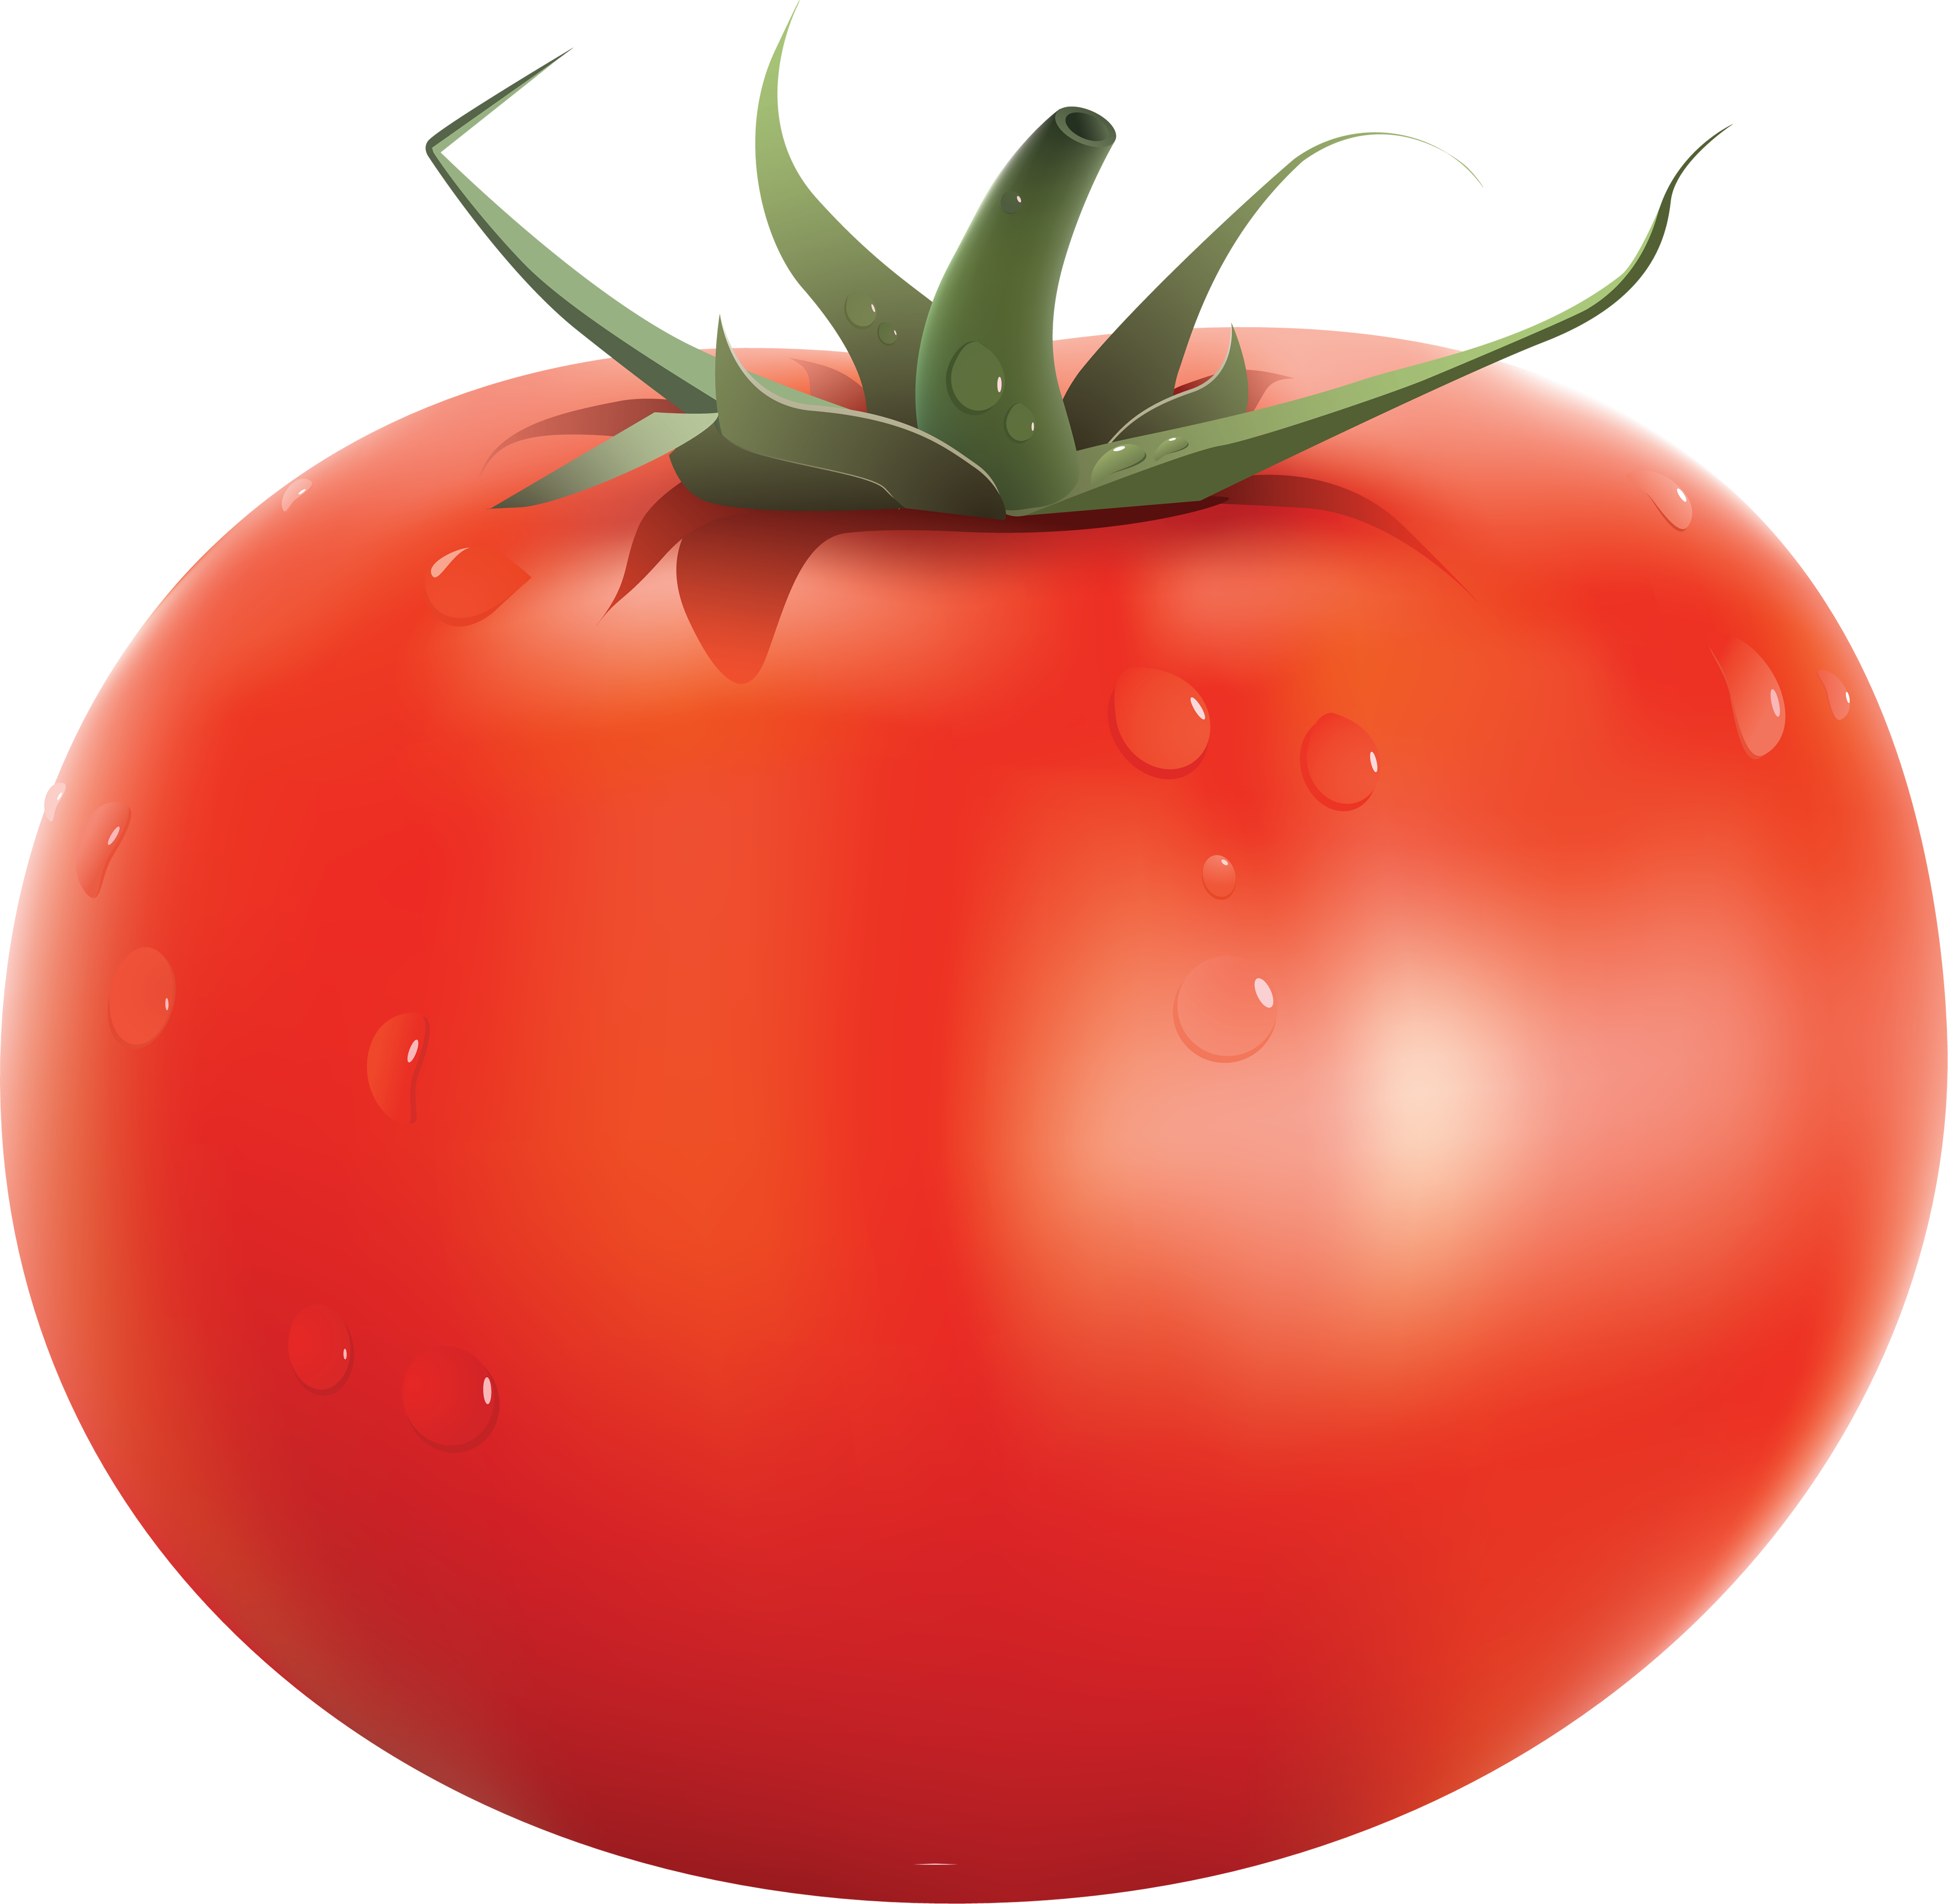 大红番茄